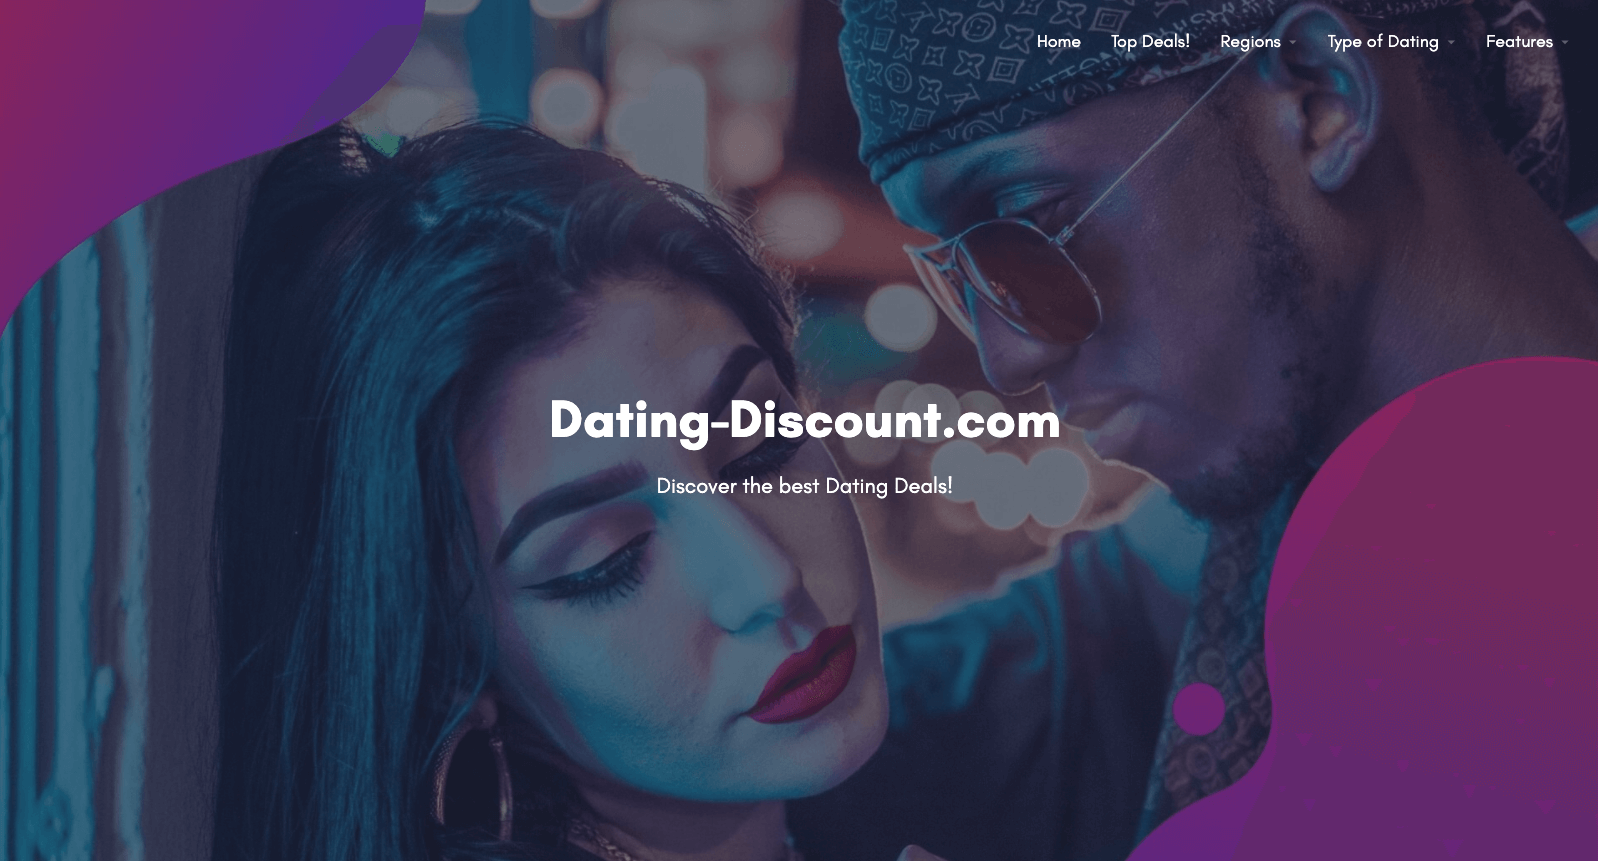 Dating-Discount.com